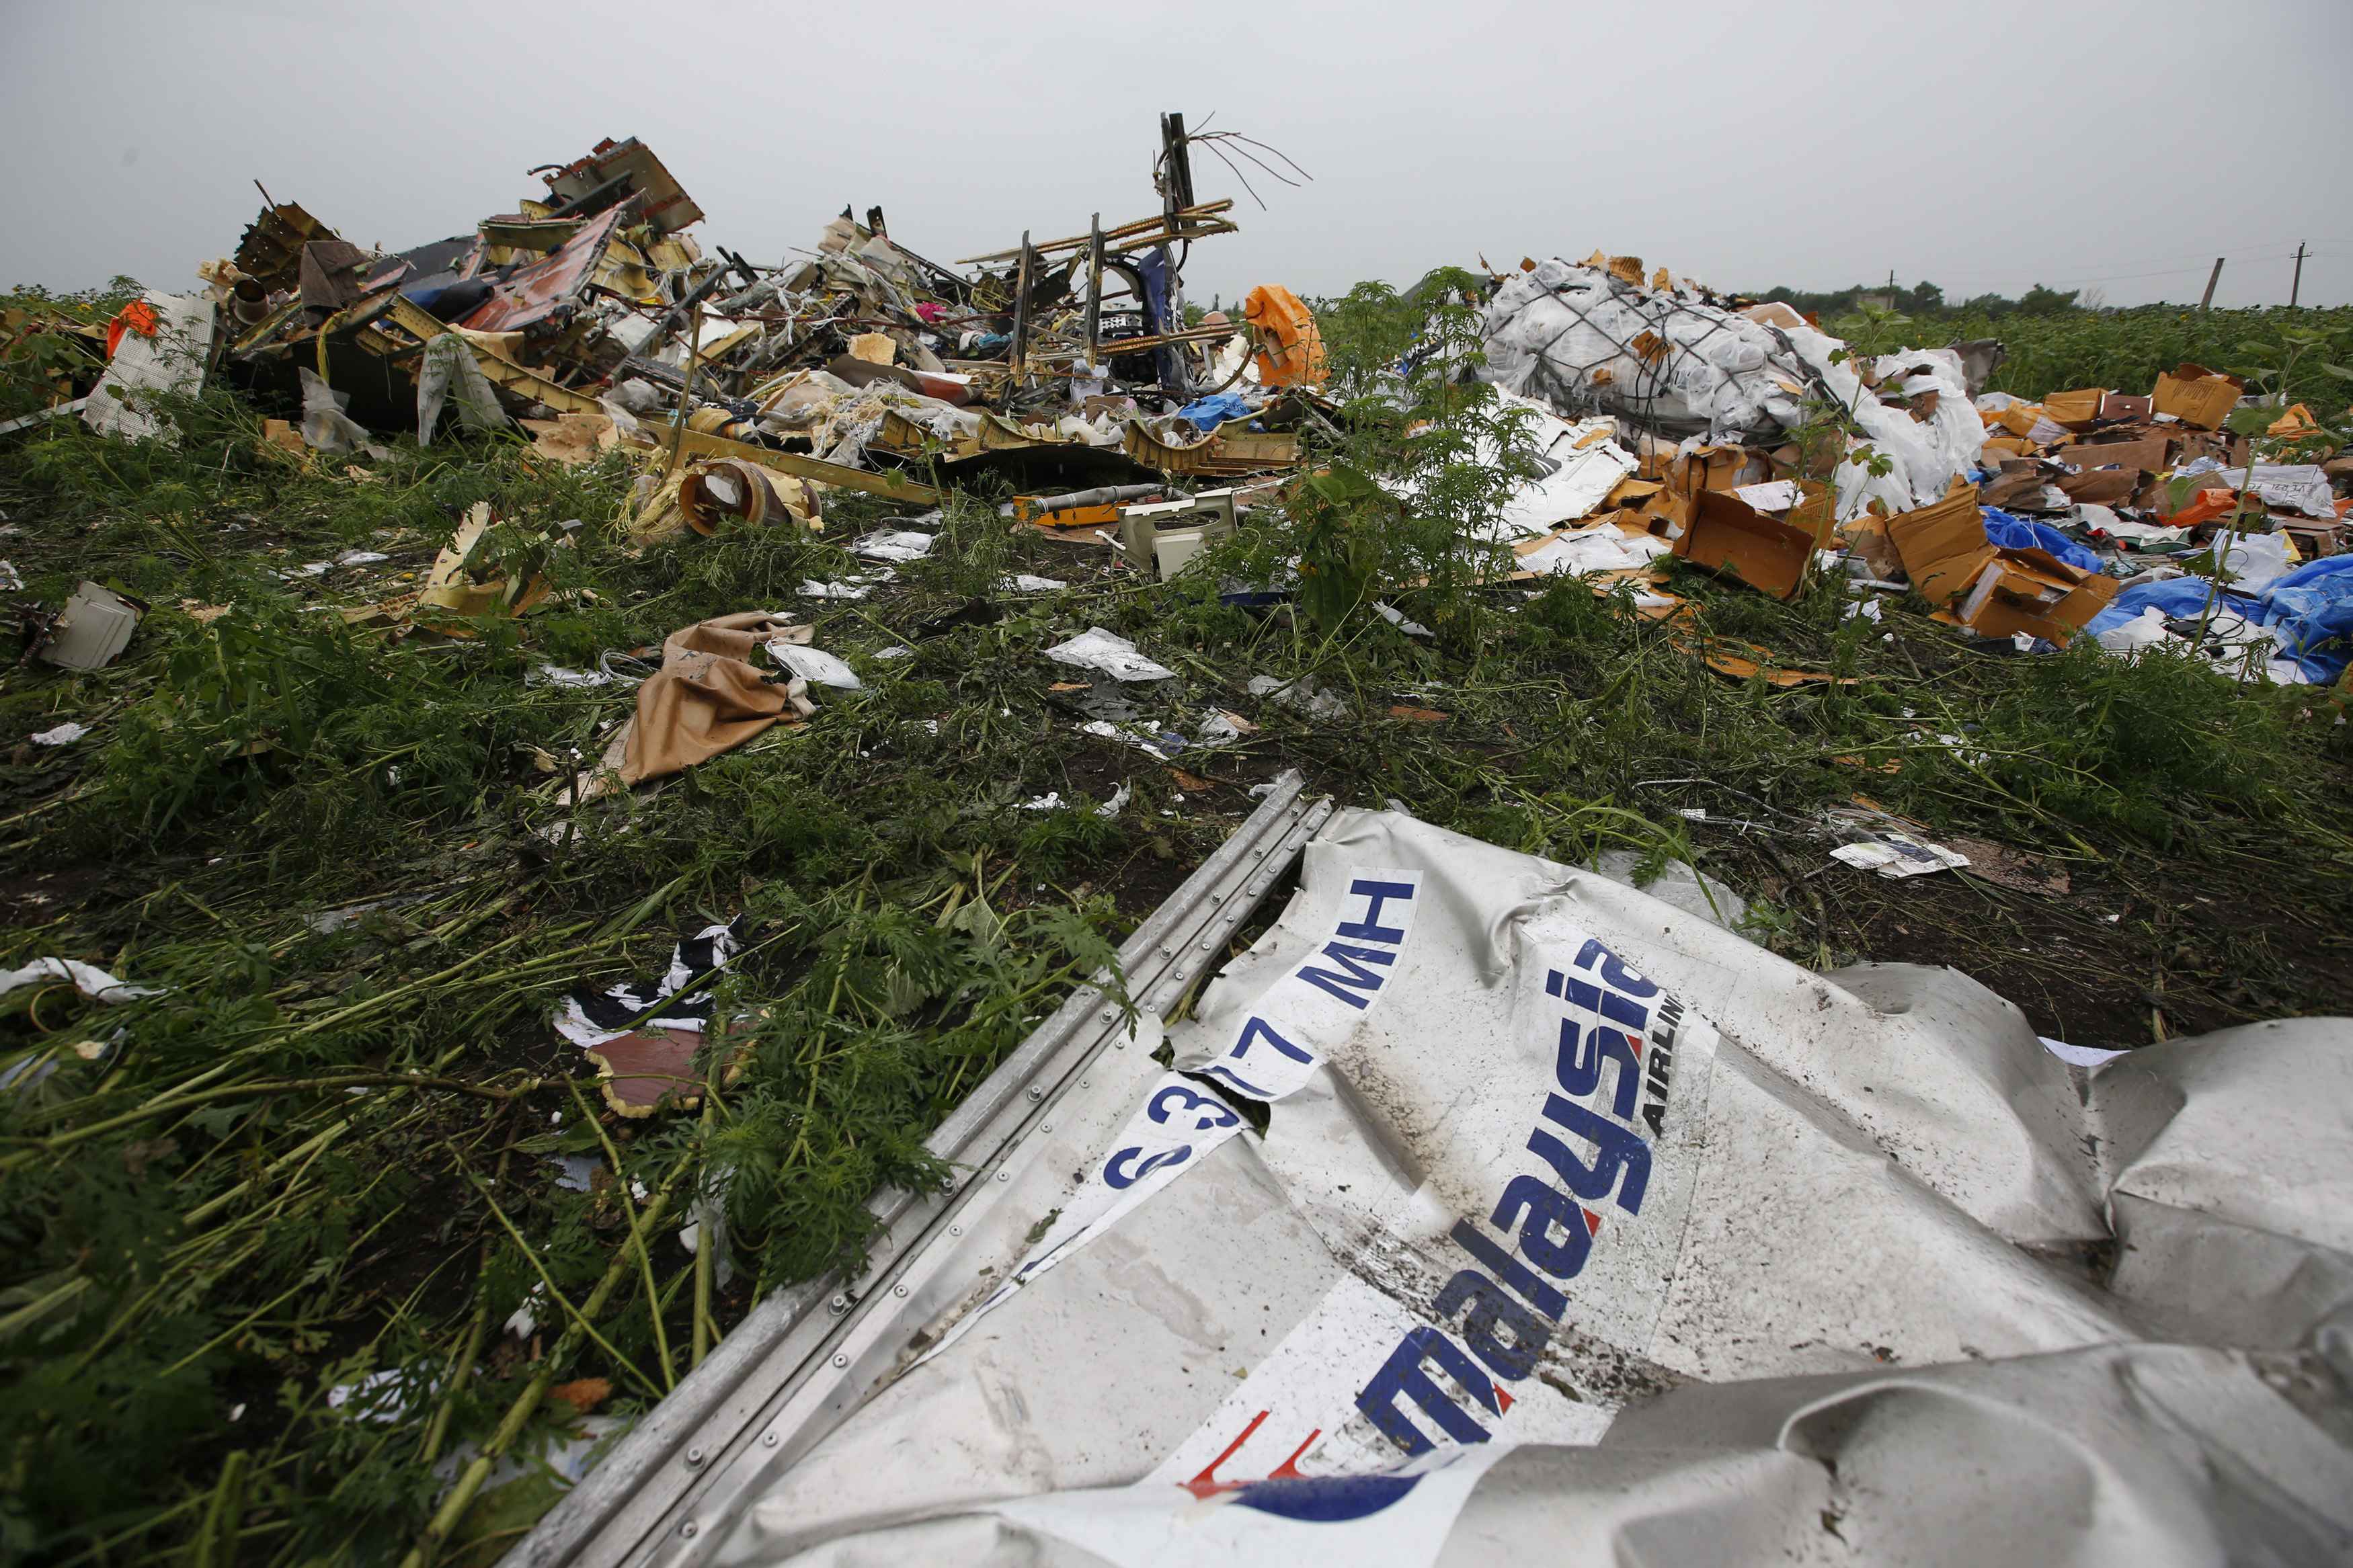 EEUU difundirá nuevos detalles sobre caída de vuelo MH17